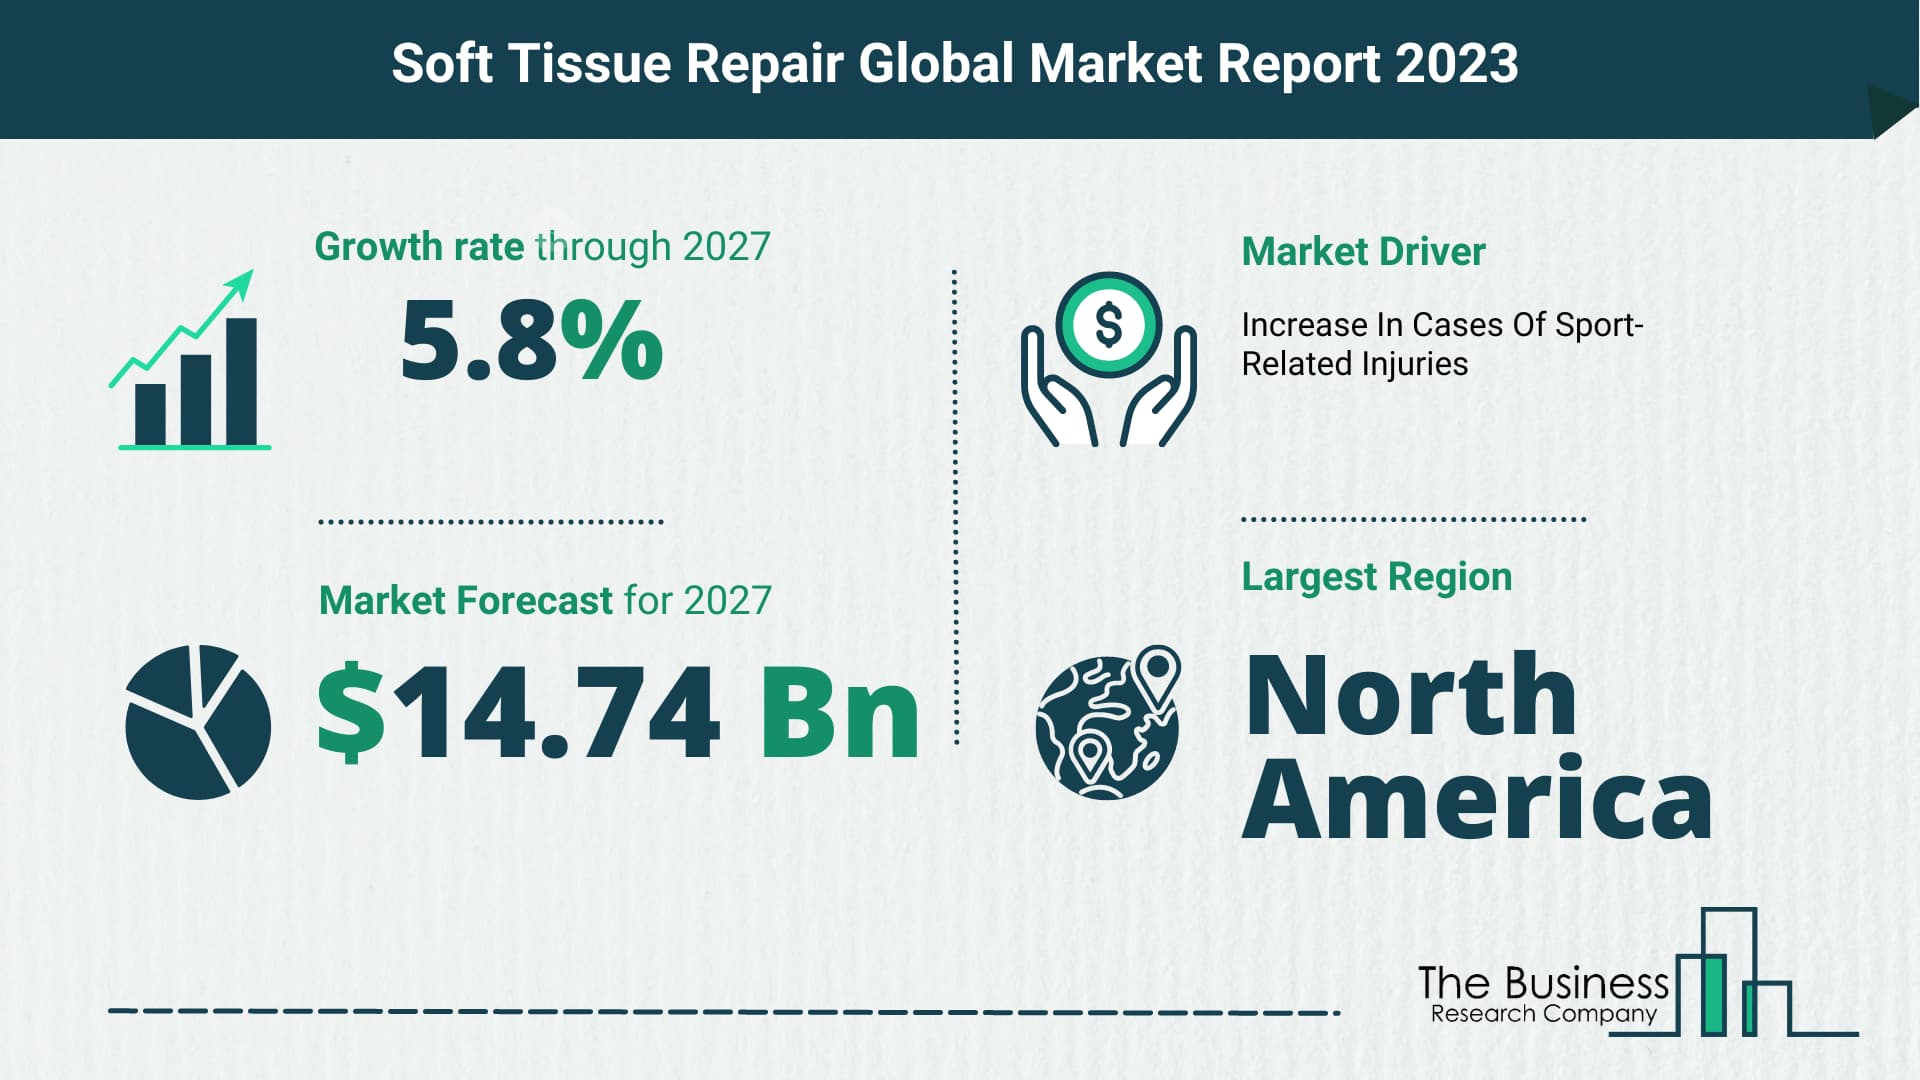 soft tissue repair market